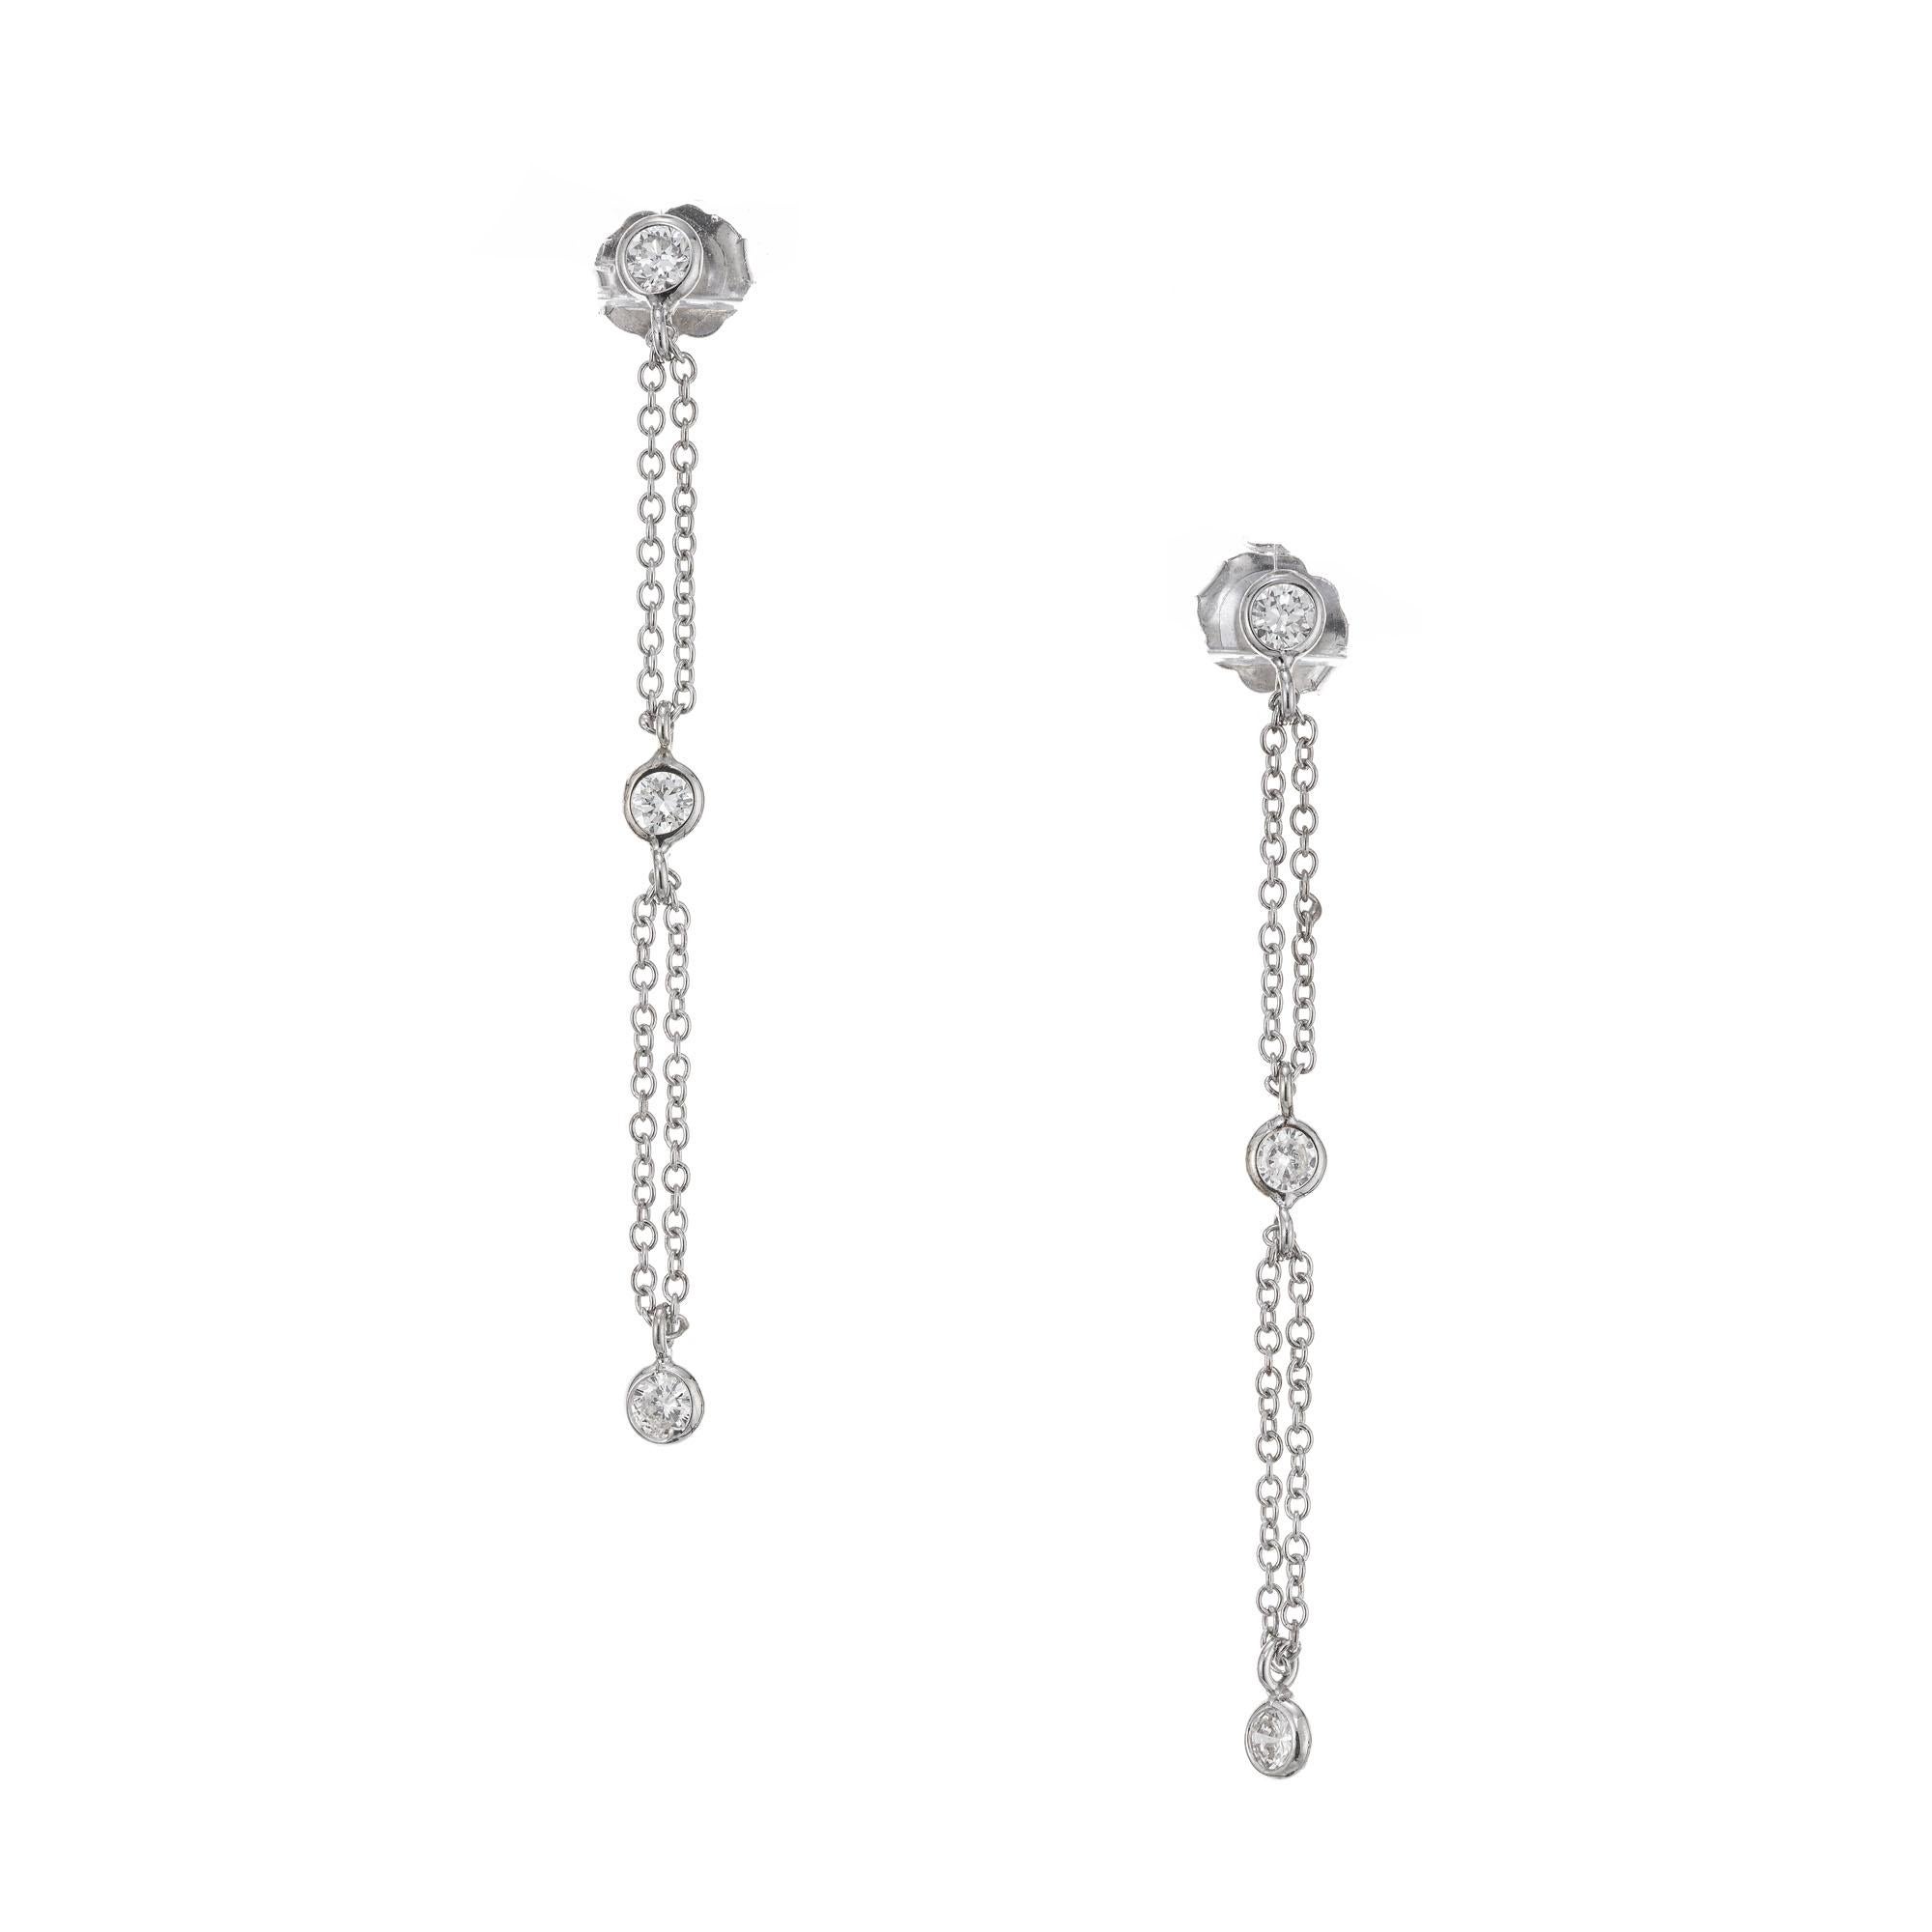 Peter Suchy Diamanten durch die Yard-Stil baumeln Ohrringe. 6 Diamanten in Lünettenfassung, verbunden durch eine durchgehende Schleife aus doppelter Kette, die frei durch den Sprungring am Diamanten schwebt. Die Fassungen sind 3,3 mm und die Kette